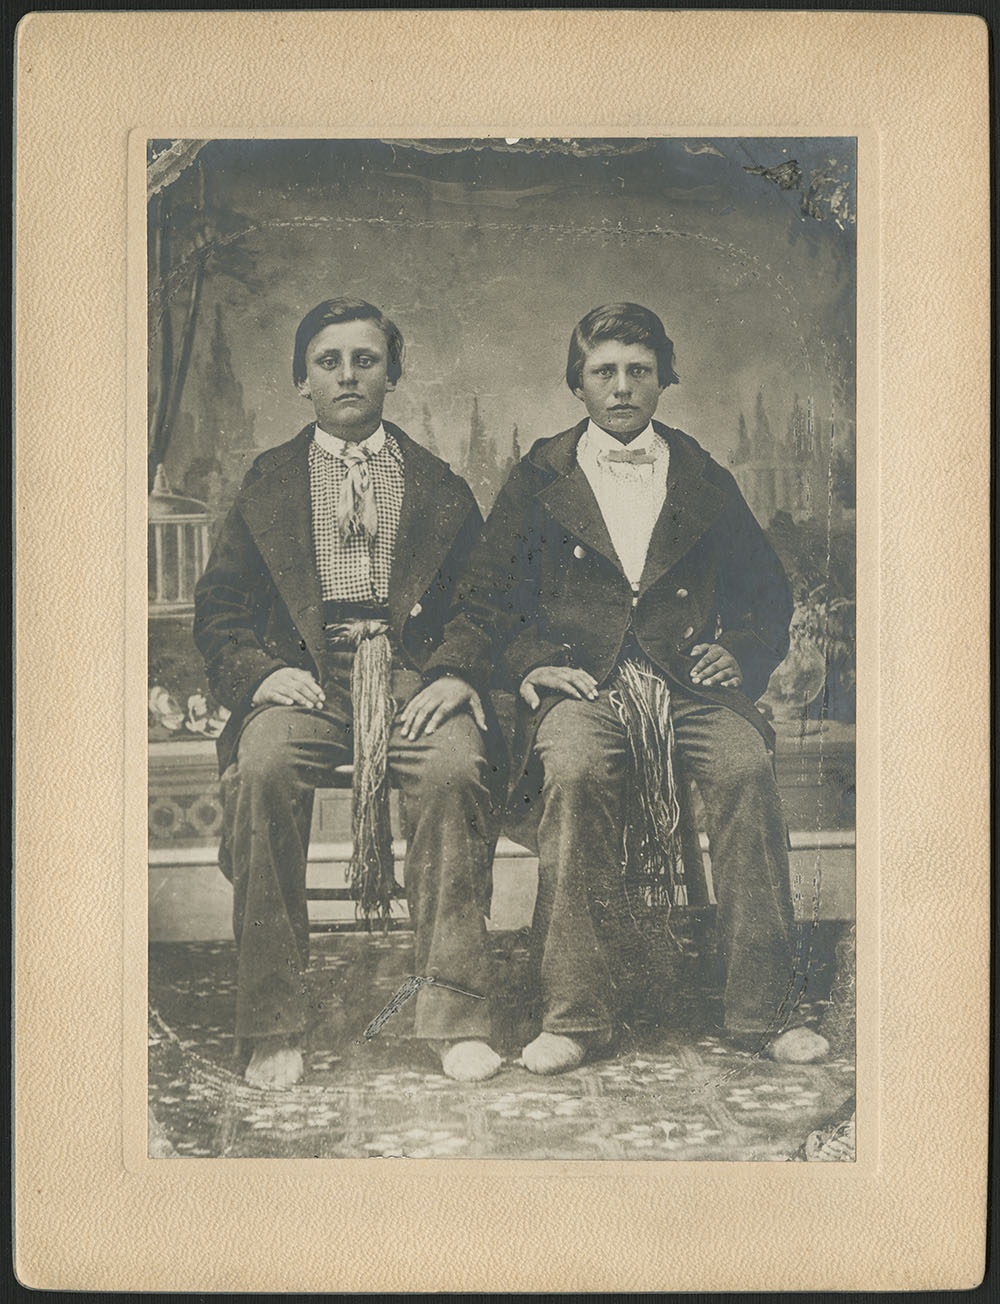 Portrait noir et blanc pris en studio montrant deux garçons assis côte à côte, portant de larges ceintures sous leurs manteaux foncés.